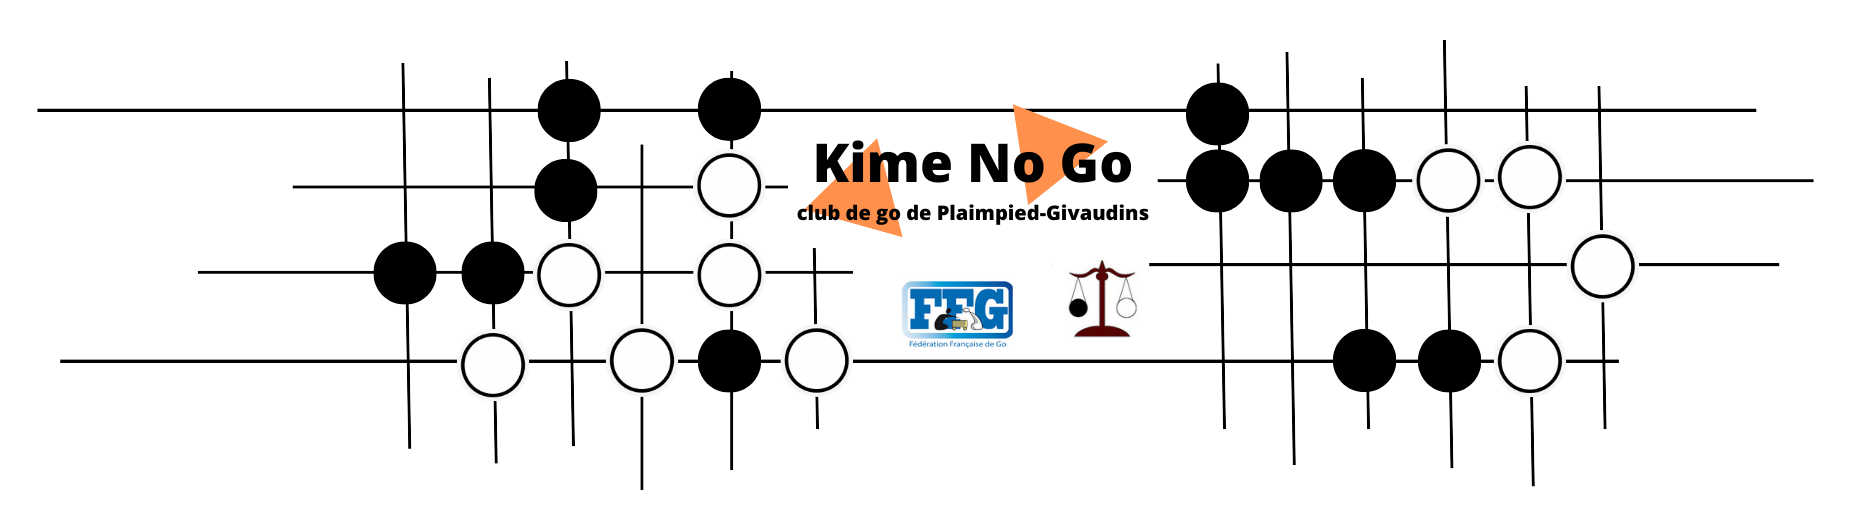 Kime No Go